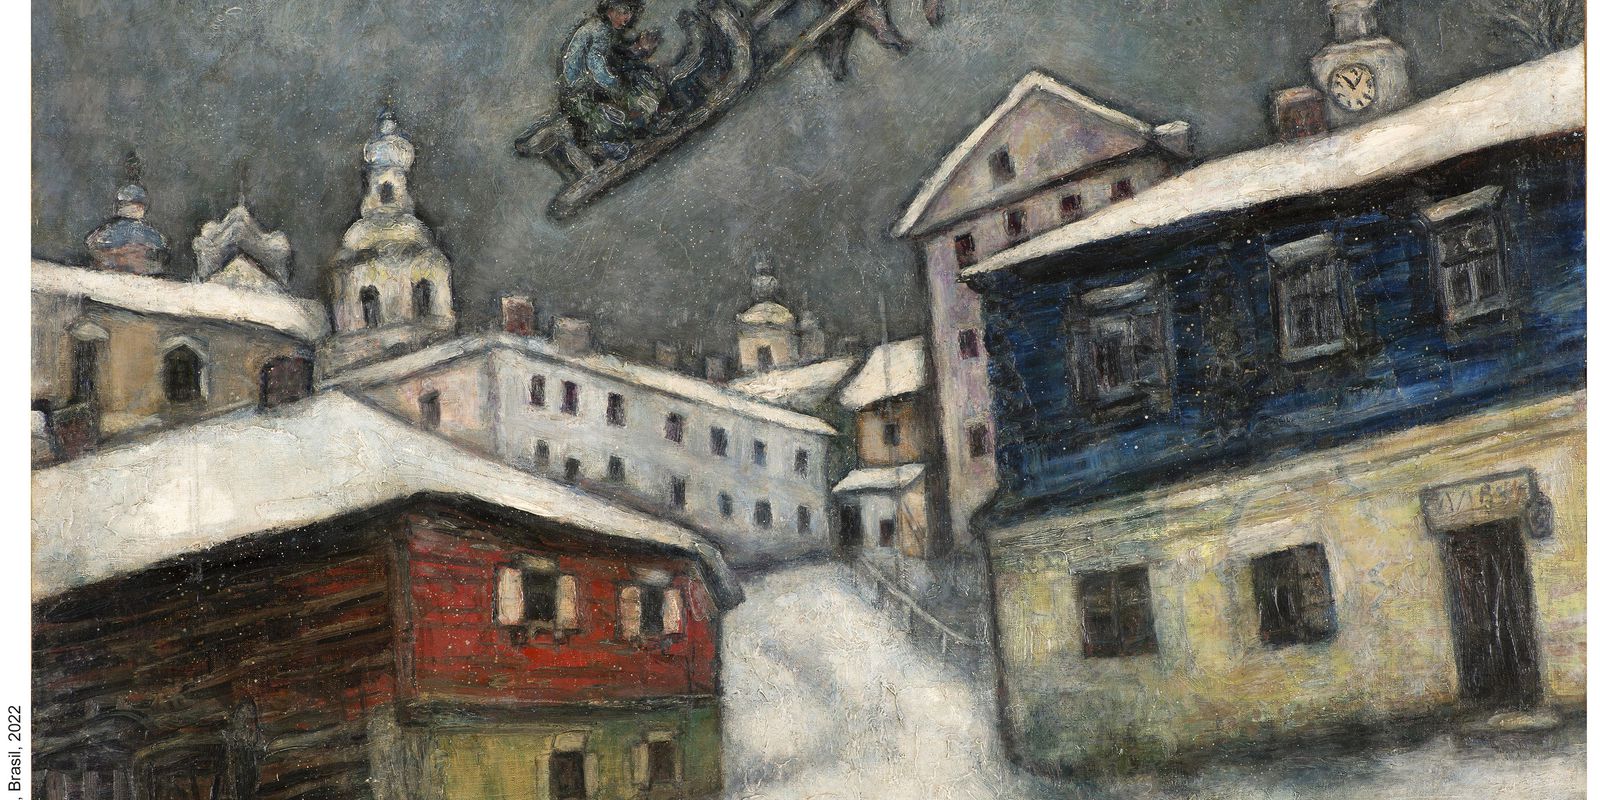 CCBB apresenta, em São Paulo, exposição dedicada a Marc Chagall